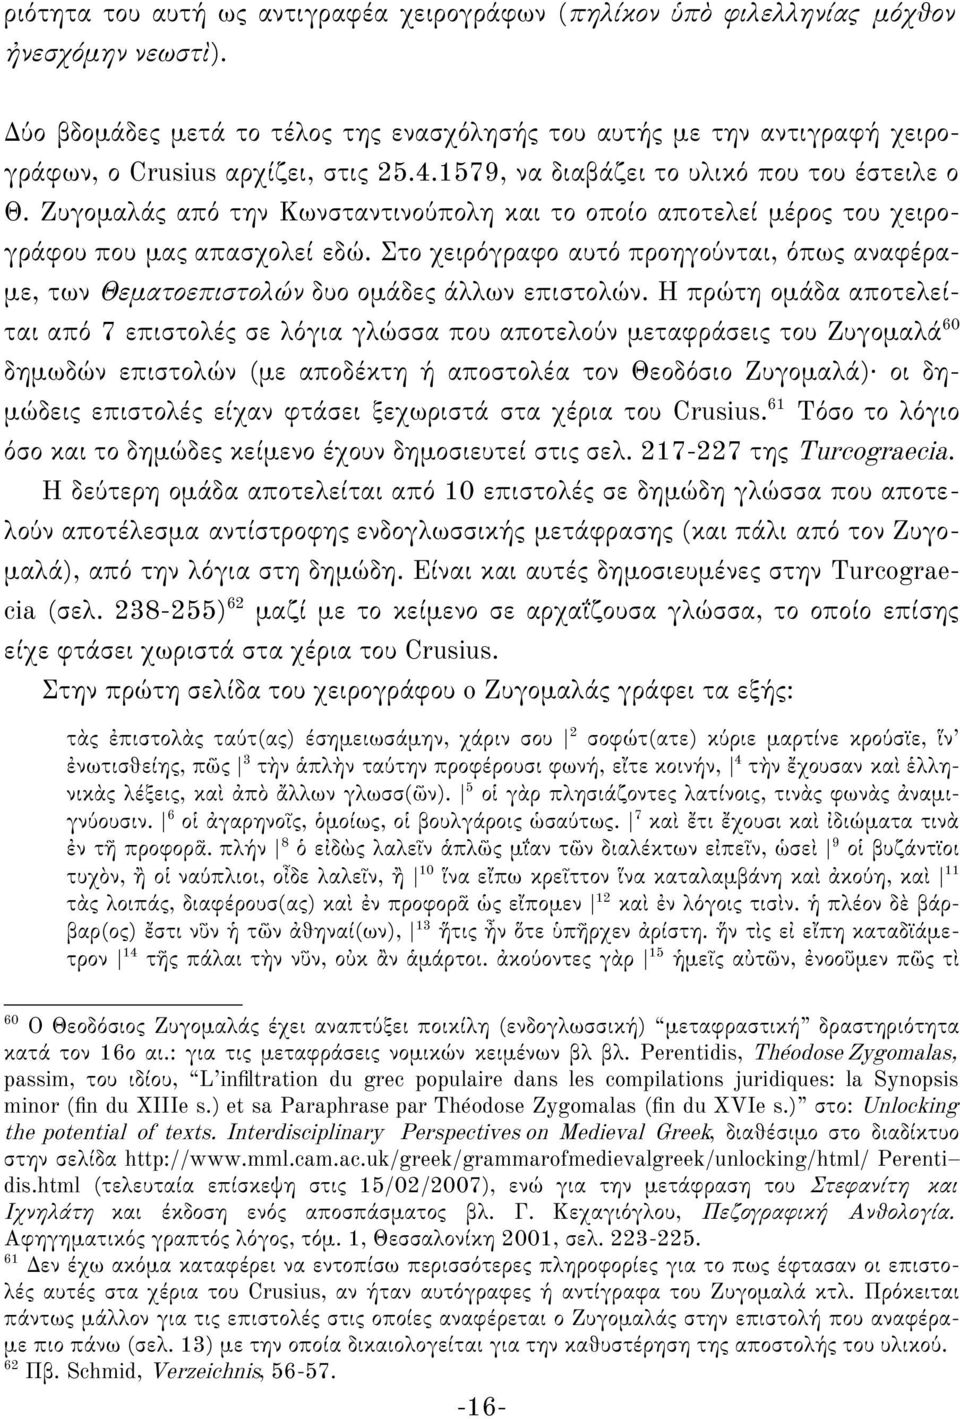 Ζυγομαλάς από την Κωνσταντινούπολη και το οποίο αποτελεί μέρος του χειρογράφου που μας απασχολεί εδώ. Στο χειρόγραφο αυτό προηγούνται, όπως αναφέραμε, των Θεματοεπιστολών δυο ομάδες άλλων επιστολών.